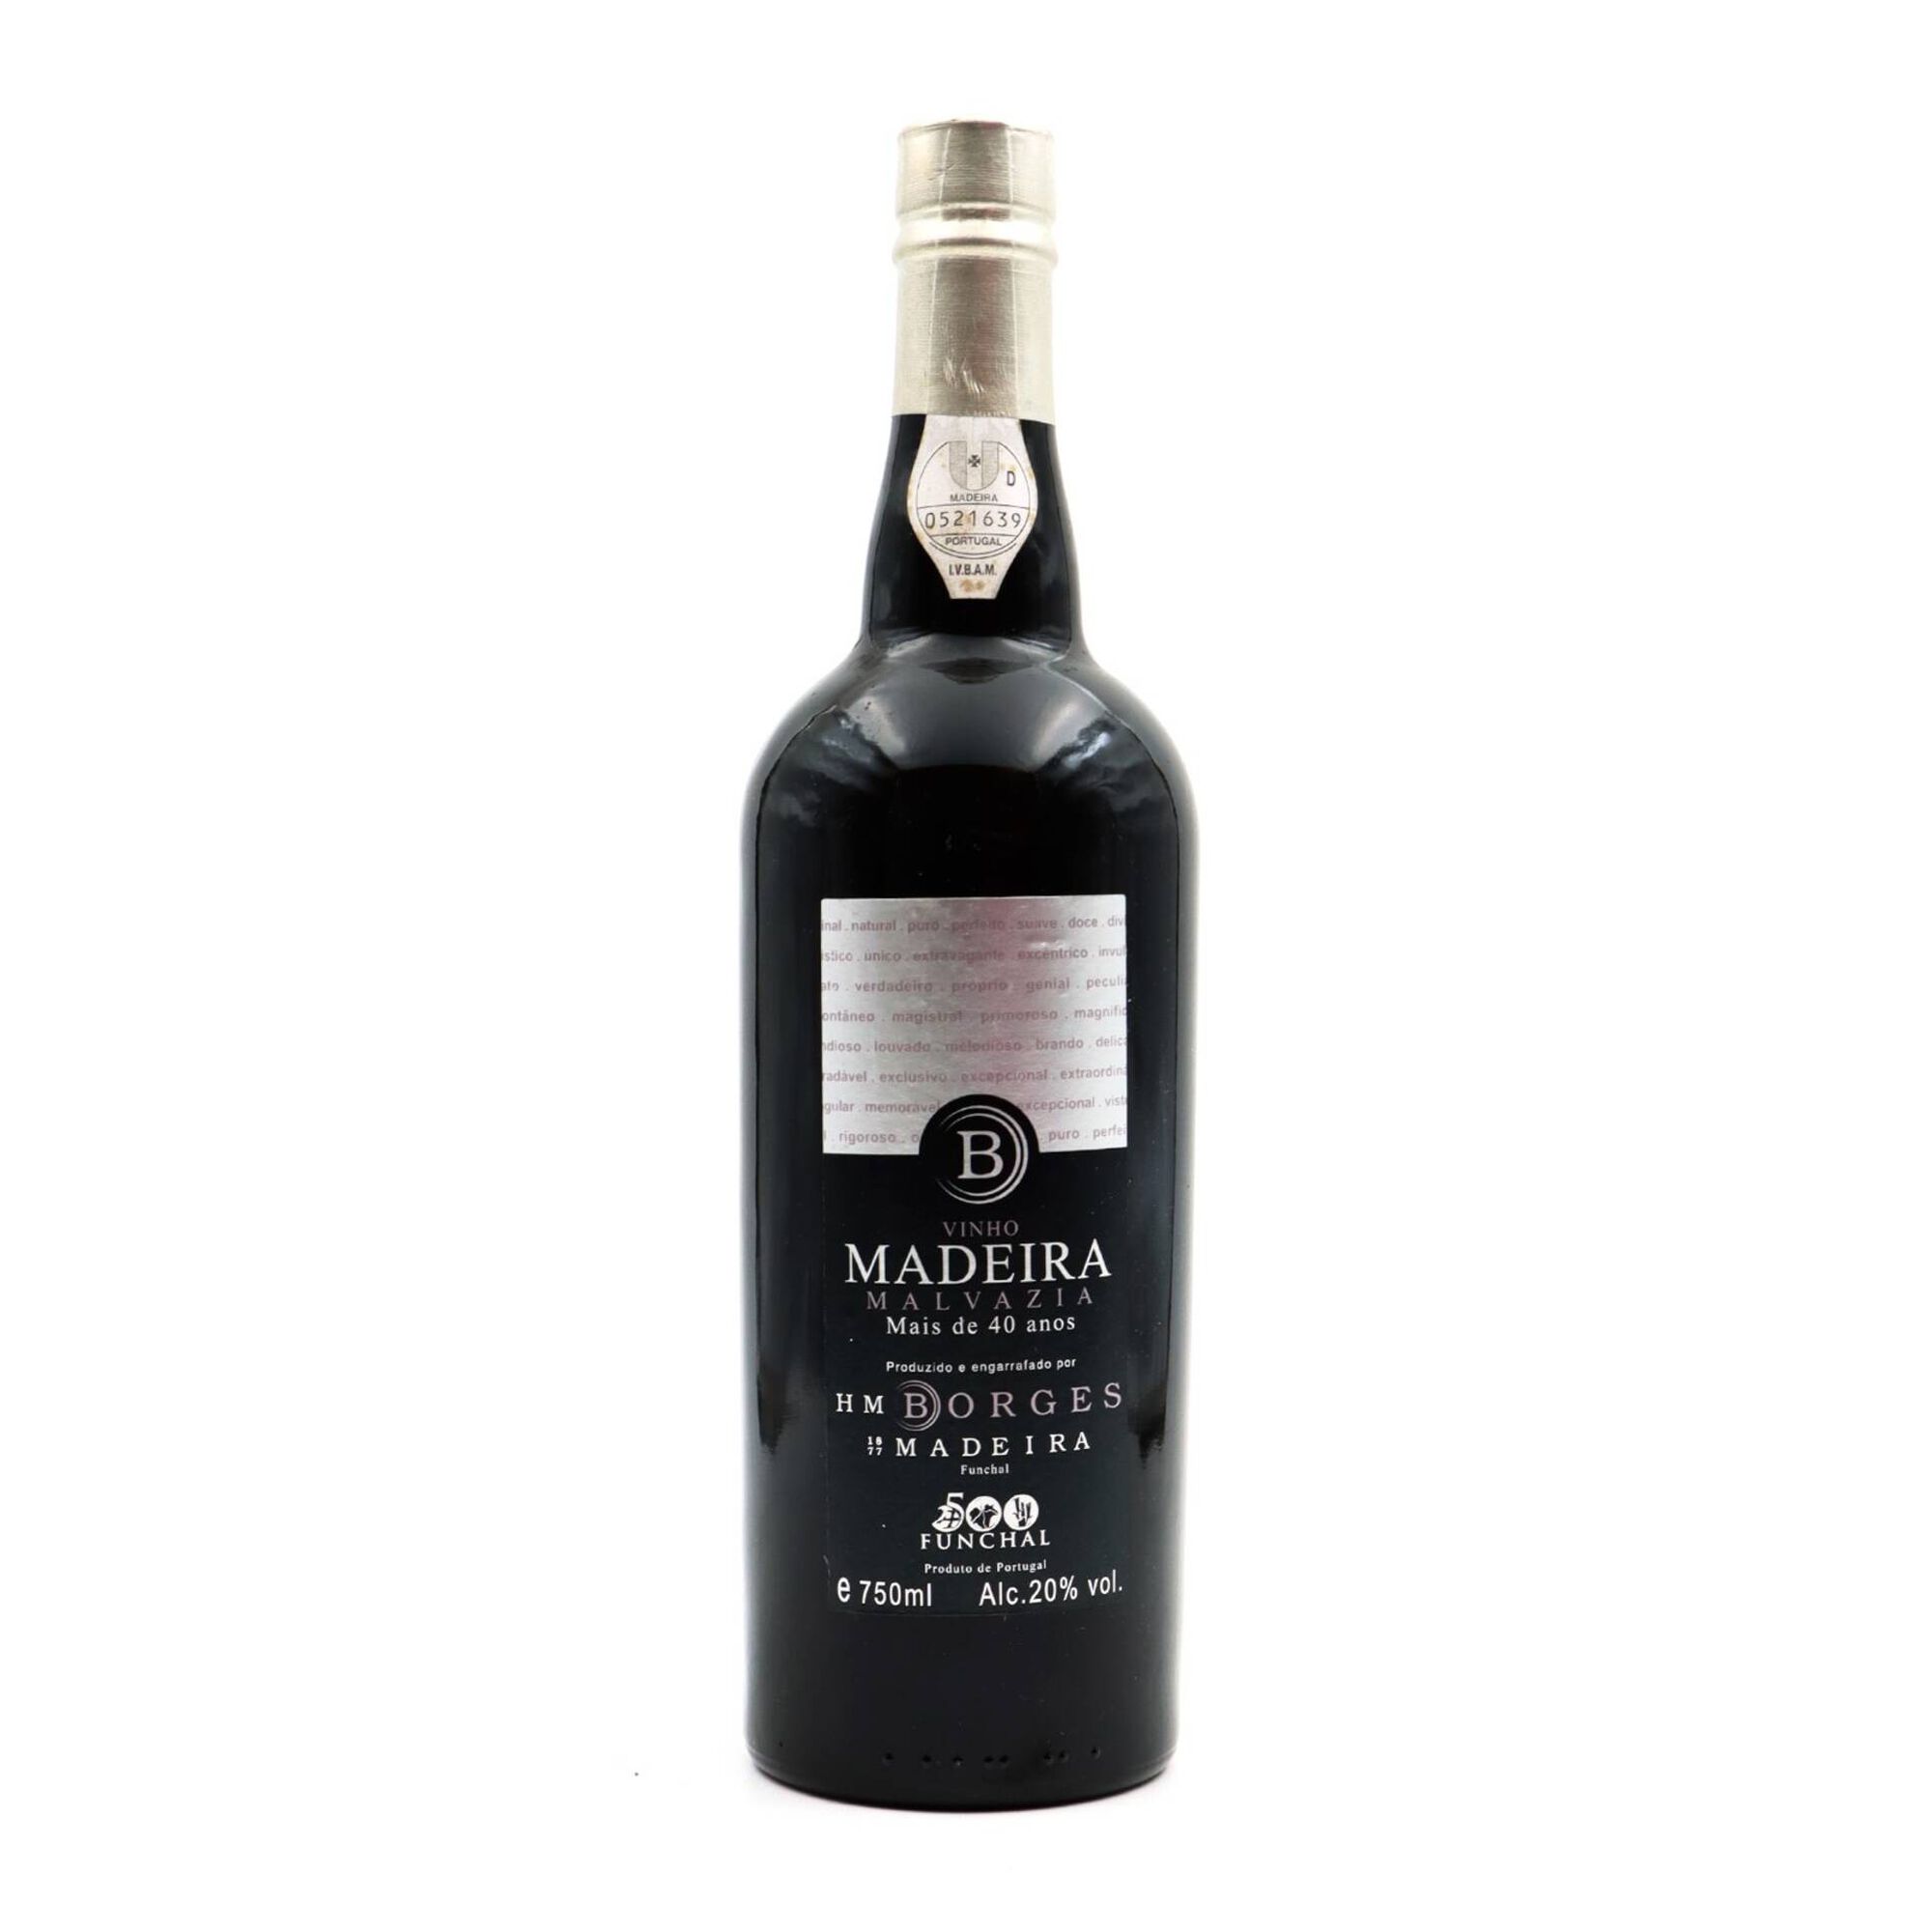 H M Borges Malvasia 40 Anos Vinho da Madeira